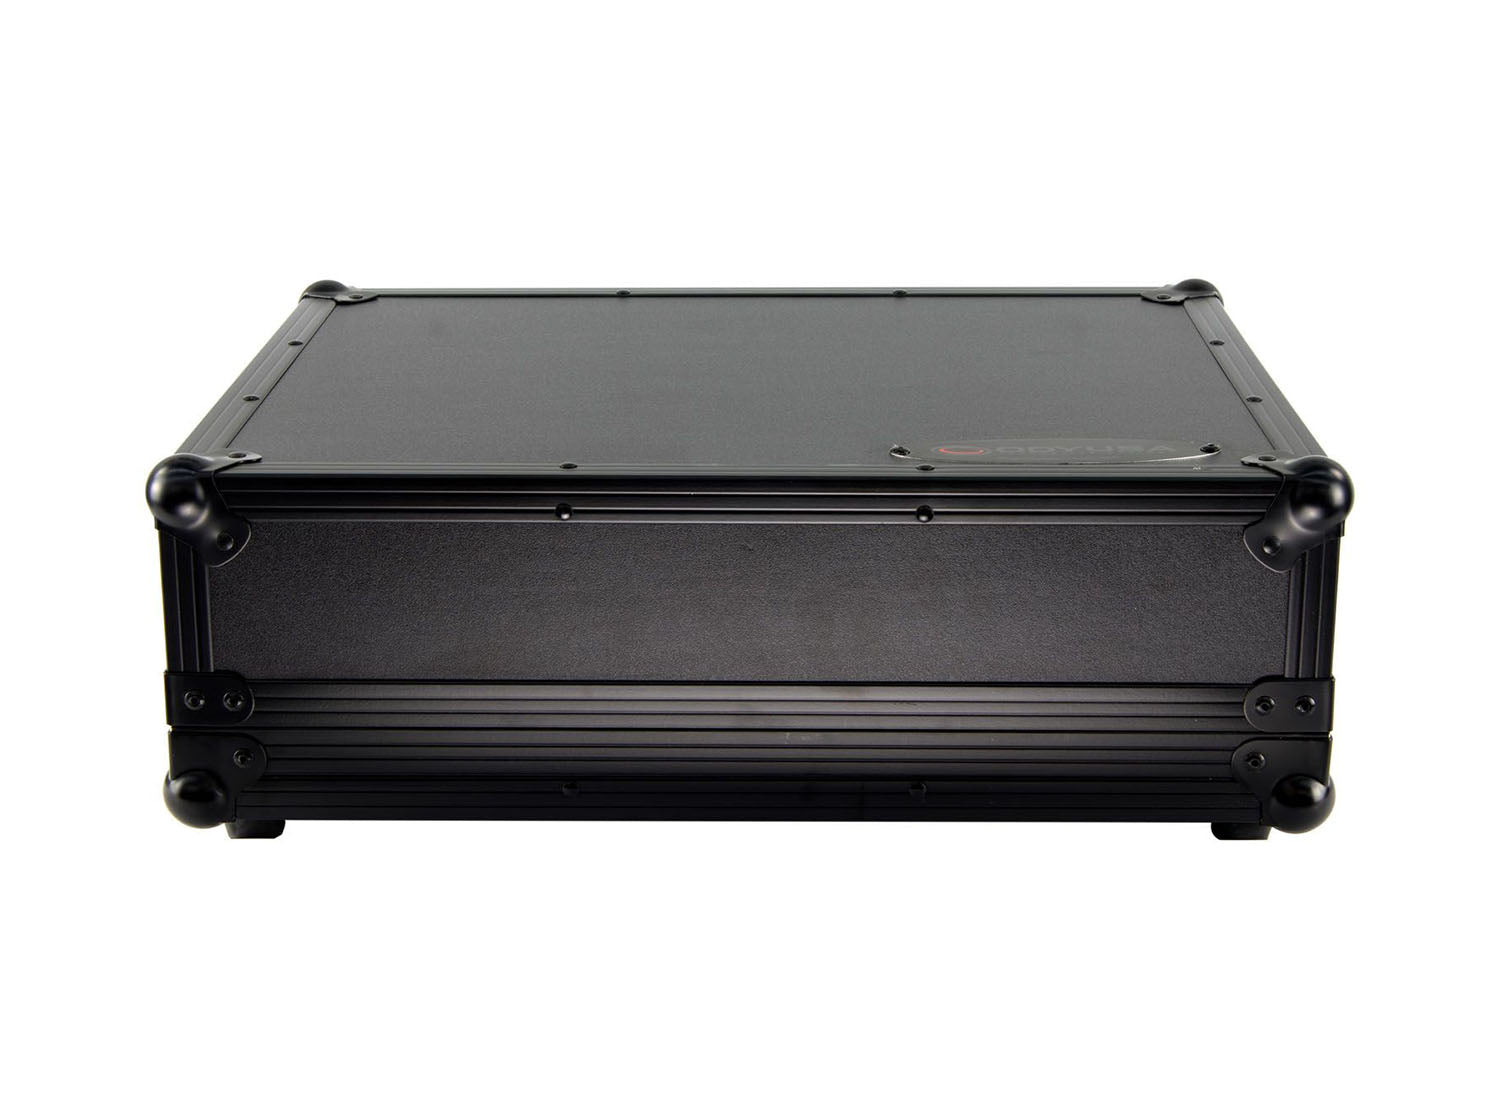 B-Stock: Odyssey FRGSPRIMEGOBL Black Label Case with Glide Style Laptop Platform for Denon DJ Prime GO - Hollywood DJ